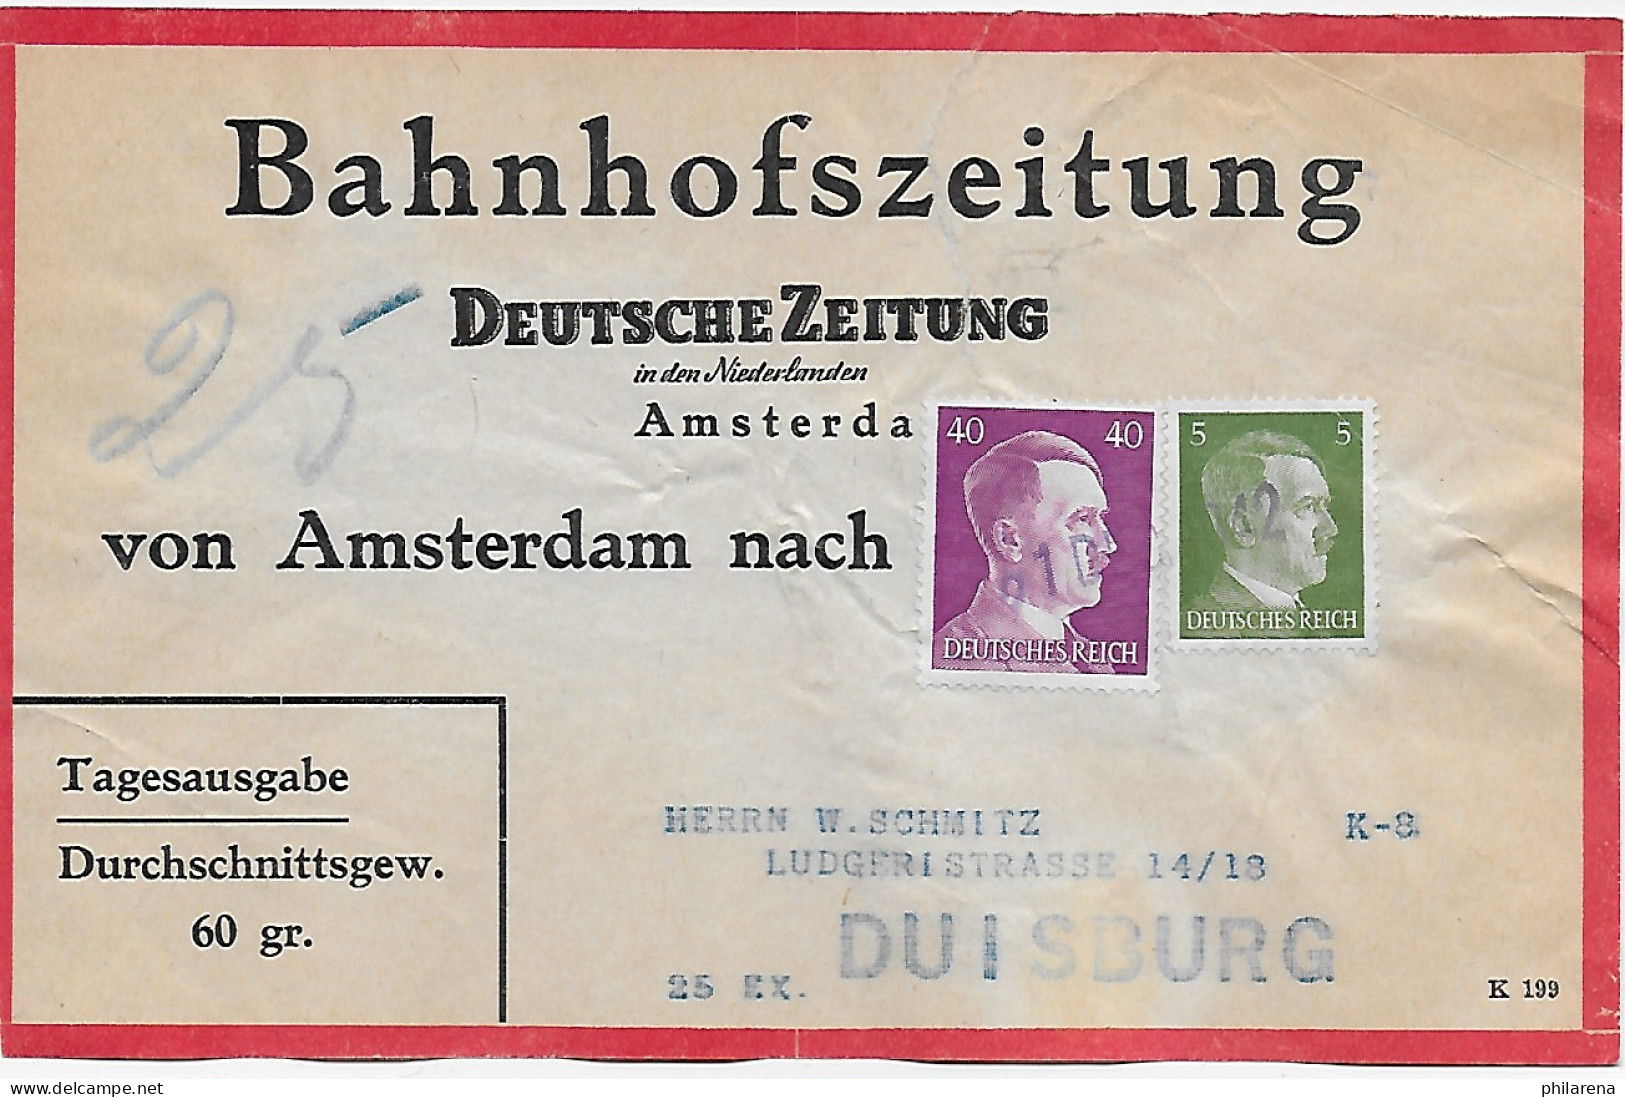 Bahnhofszeitung: 25 Stück Deutsche Zeitung, Niederlande 1942, Feldpost Amsterdam - Feldpost 2e Wereldoorlog